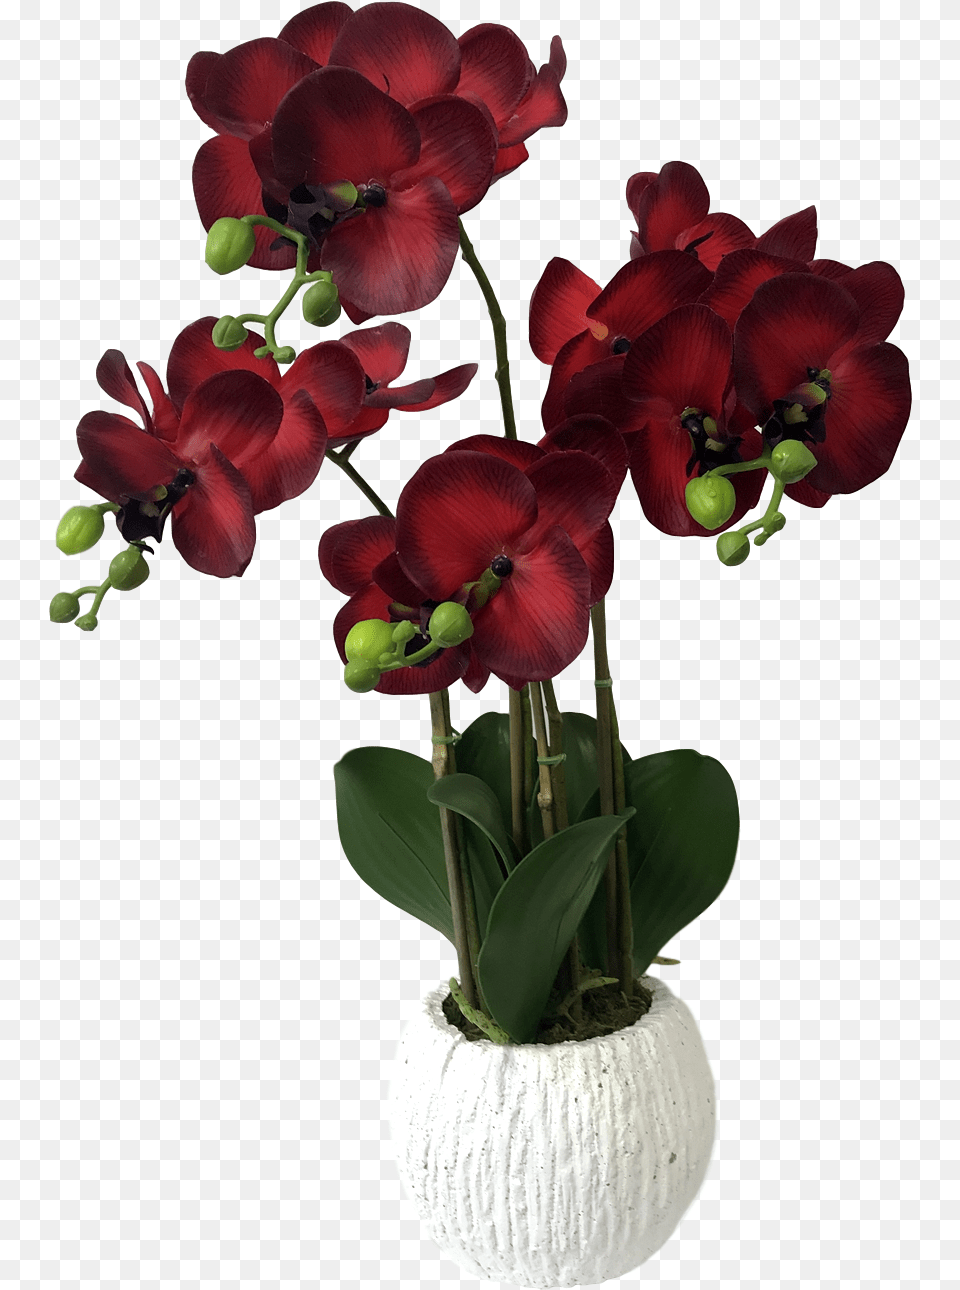 Flower Pots, Flower Arrangement, Geranium, Plant, Flower Bouquet Png Image